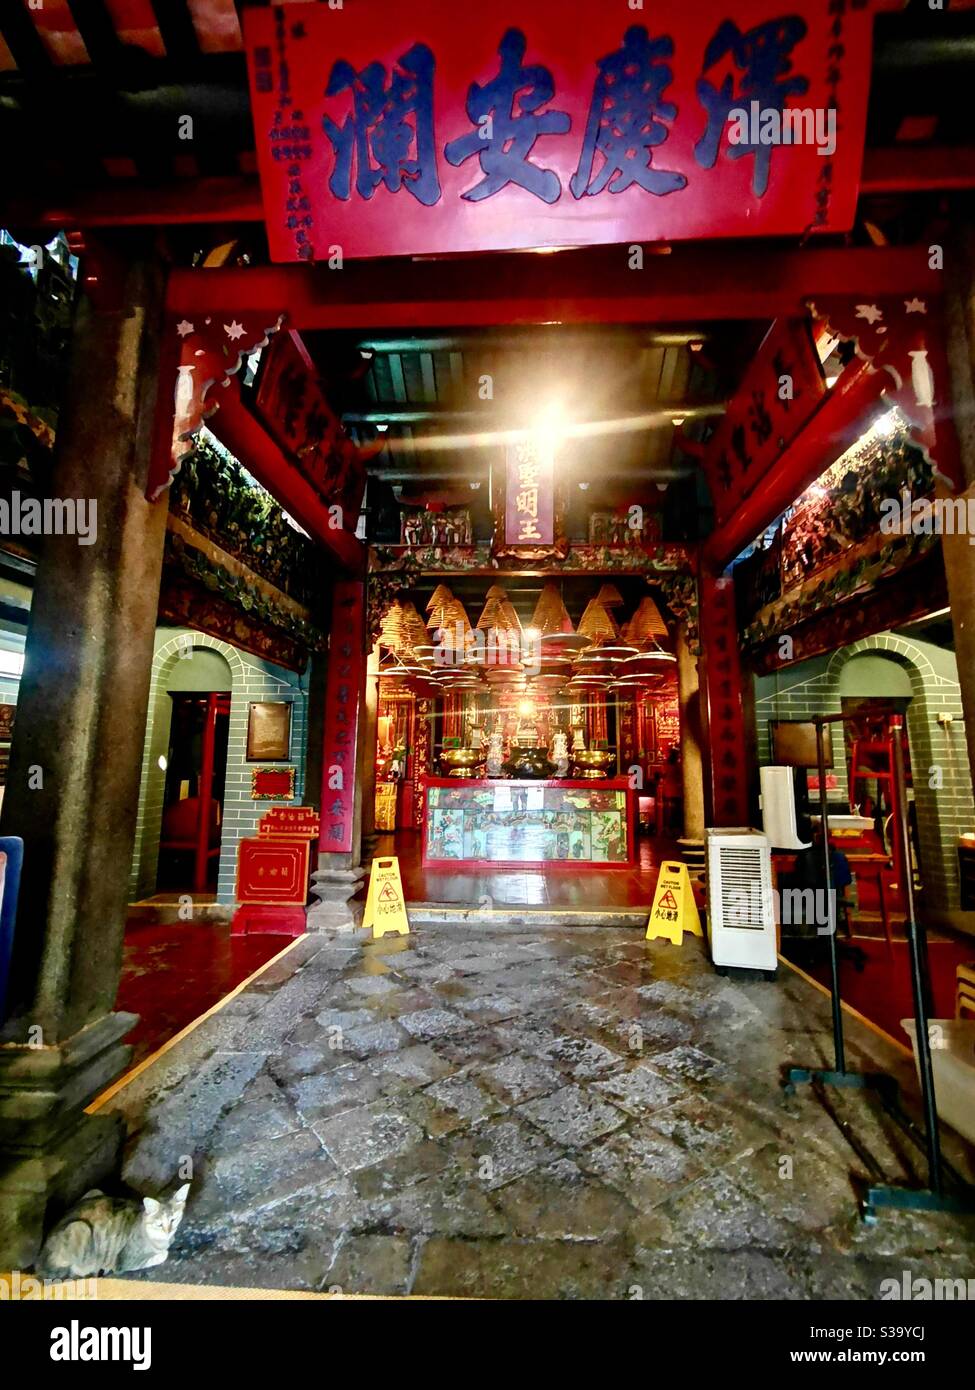 Hung Shing temple in Ap Lei Chau, Hong Kong. Stock Photo